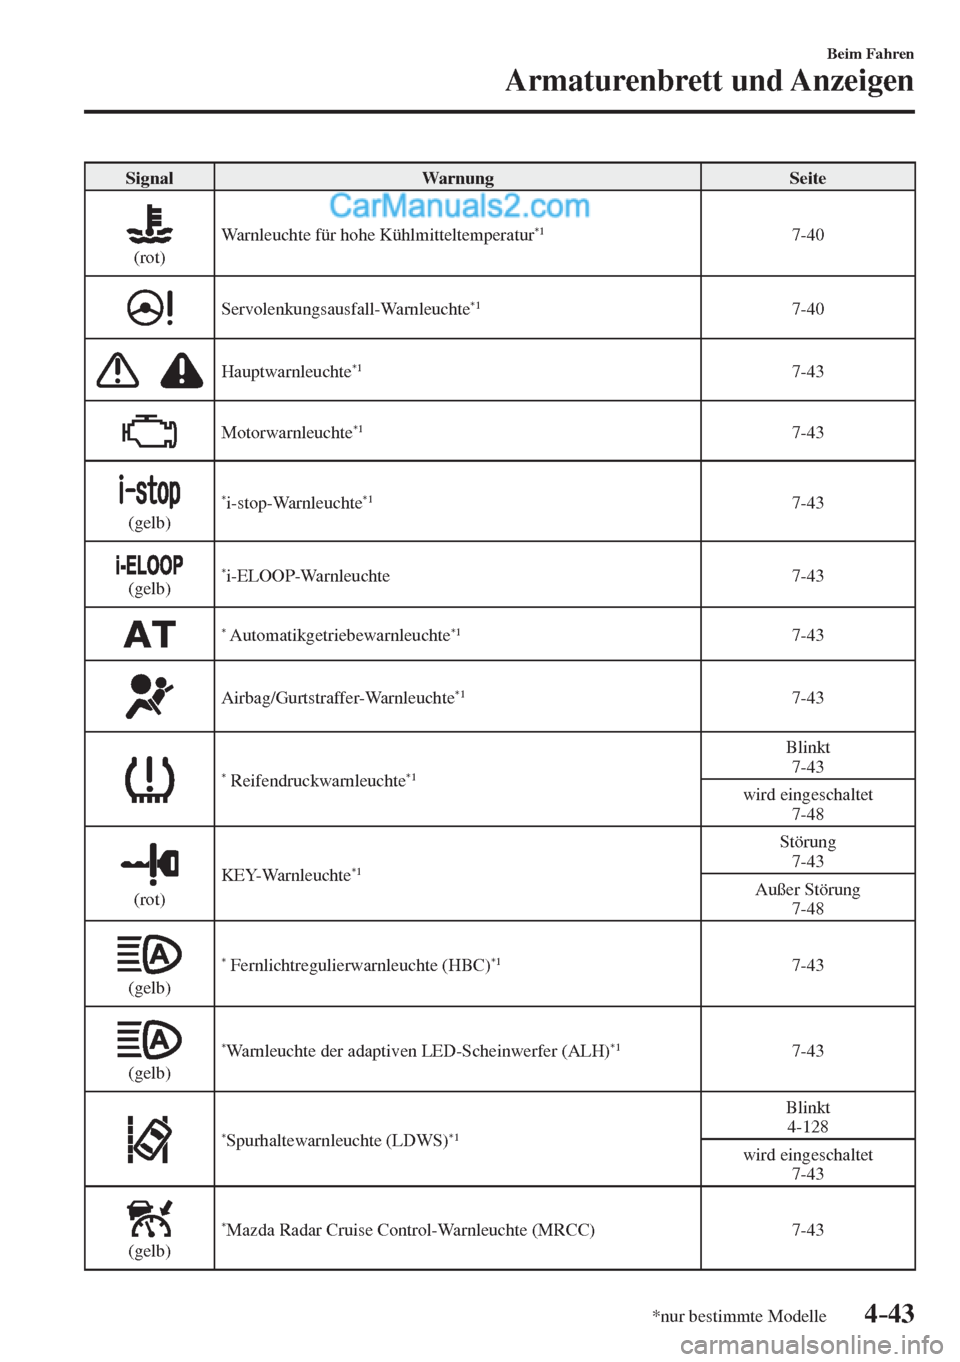 MAZDA MODEL 2 2017  Betriebsanleitung (in German) 4–43
Beim Fahren
Armaturenbrett und Anzeigen
*nur bestimmte Modelle
 Signal   Warnung   Seite 
  
 
  (rot)  Warnleuchte für hohe Kühlmitteltemperatur *1    7-40 
 
  Servolenkungsausfall-Warnleuc